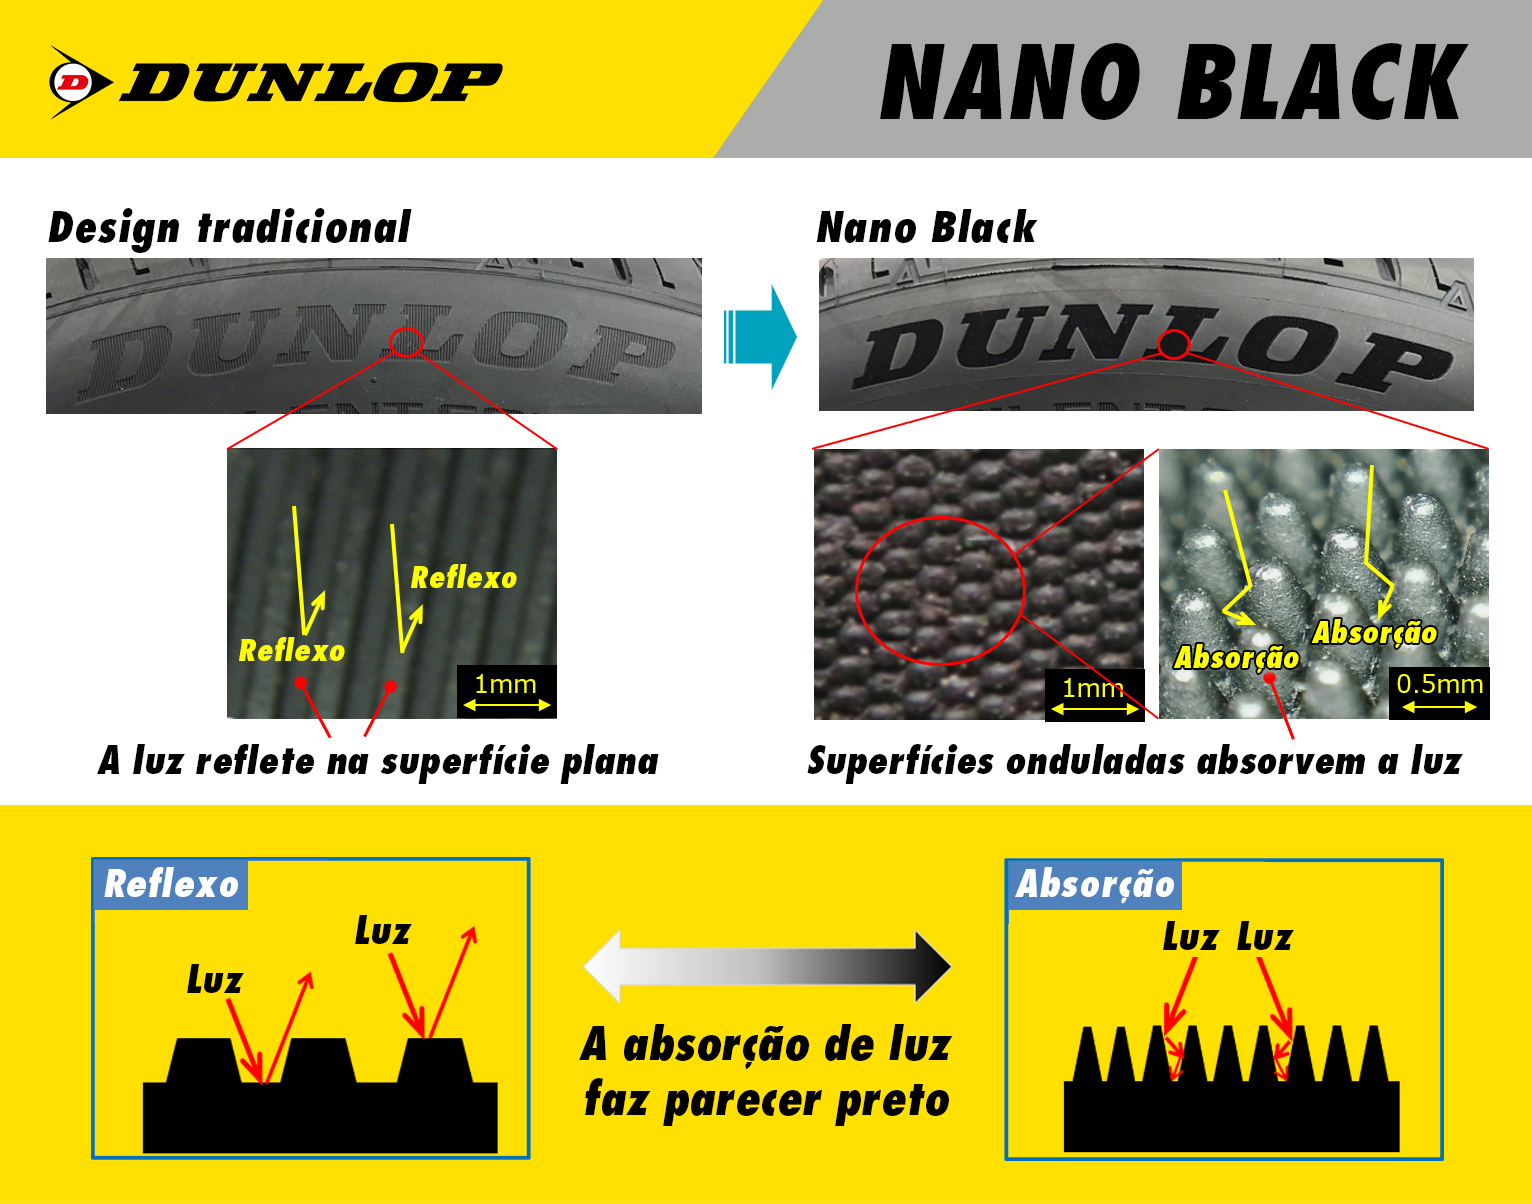 Tecnologia da Sumitomo Rubber, fabricante dos pneus Dunlop, permite maior realce de cor nos pneus e melhor identificação do produto